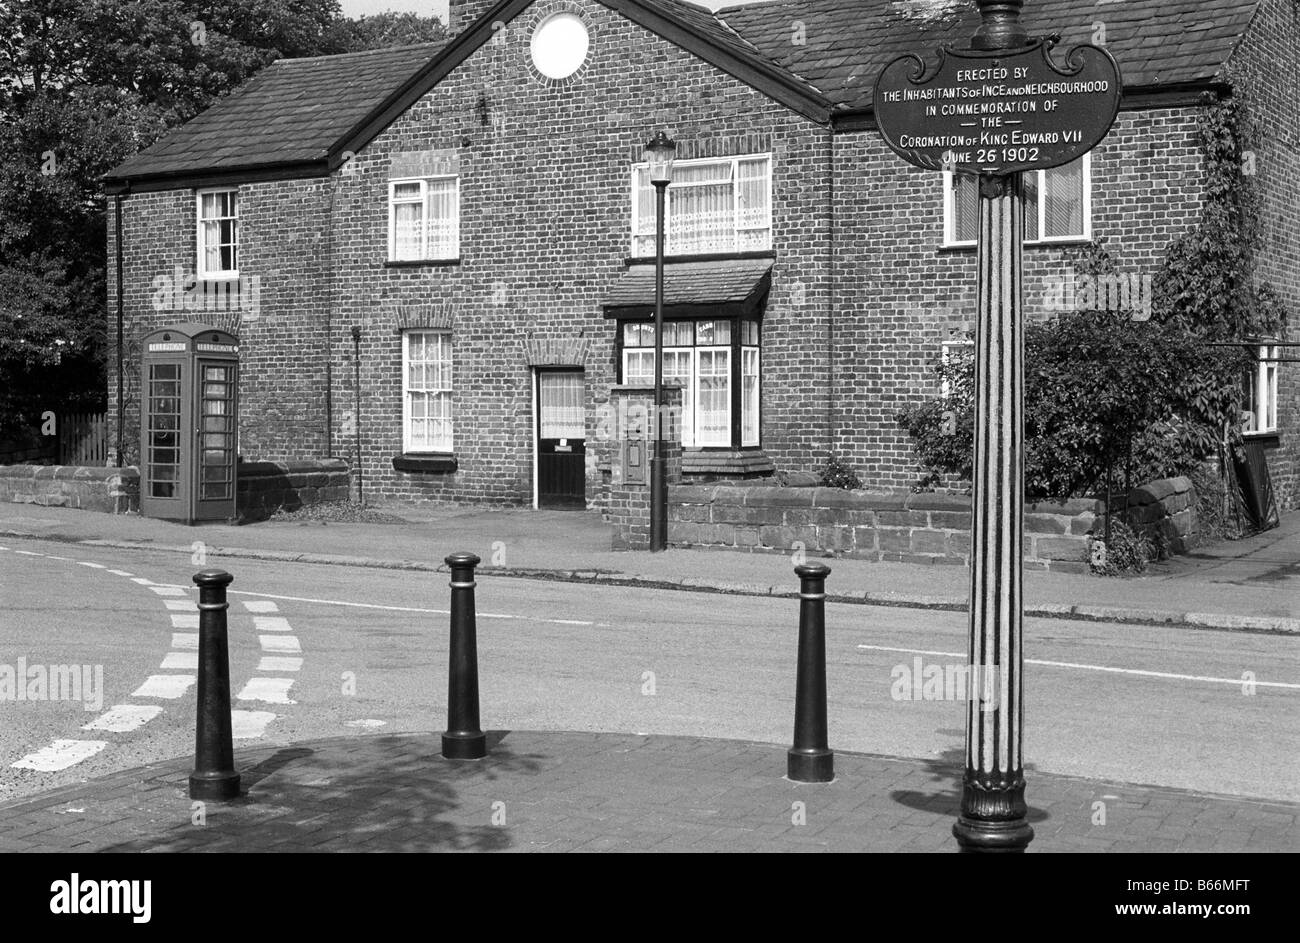 UK England Cheshire Ince Edward VII Krönung Memorial und Dorf k6 Telefonzelle Stockfoto